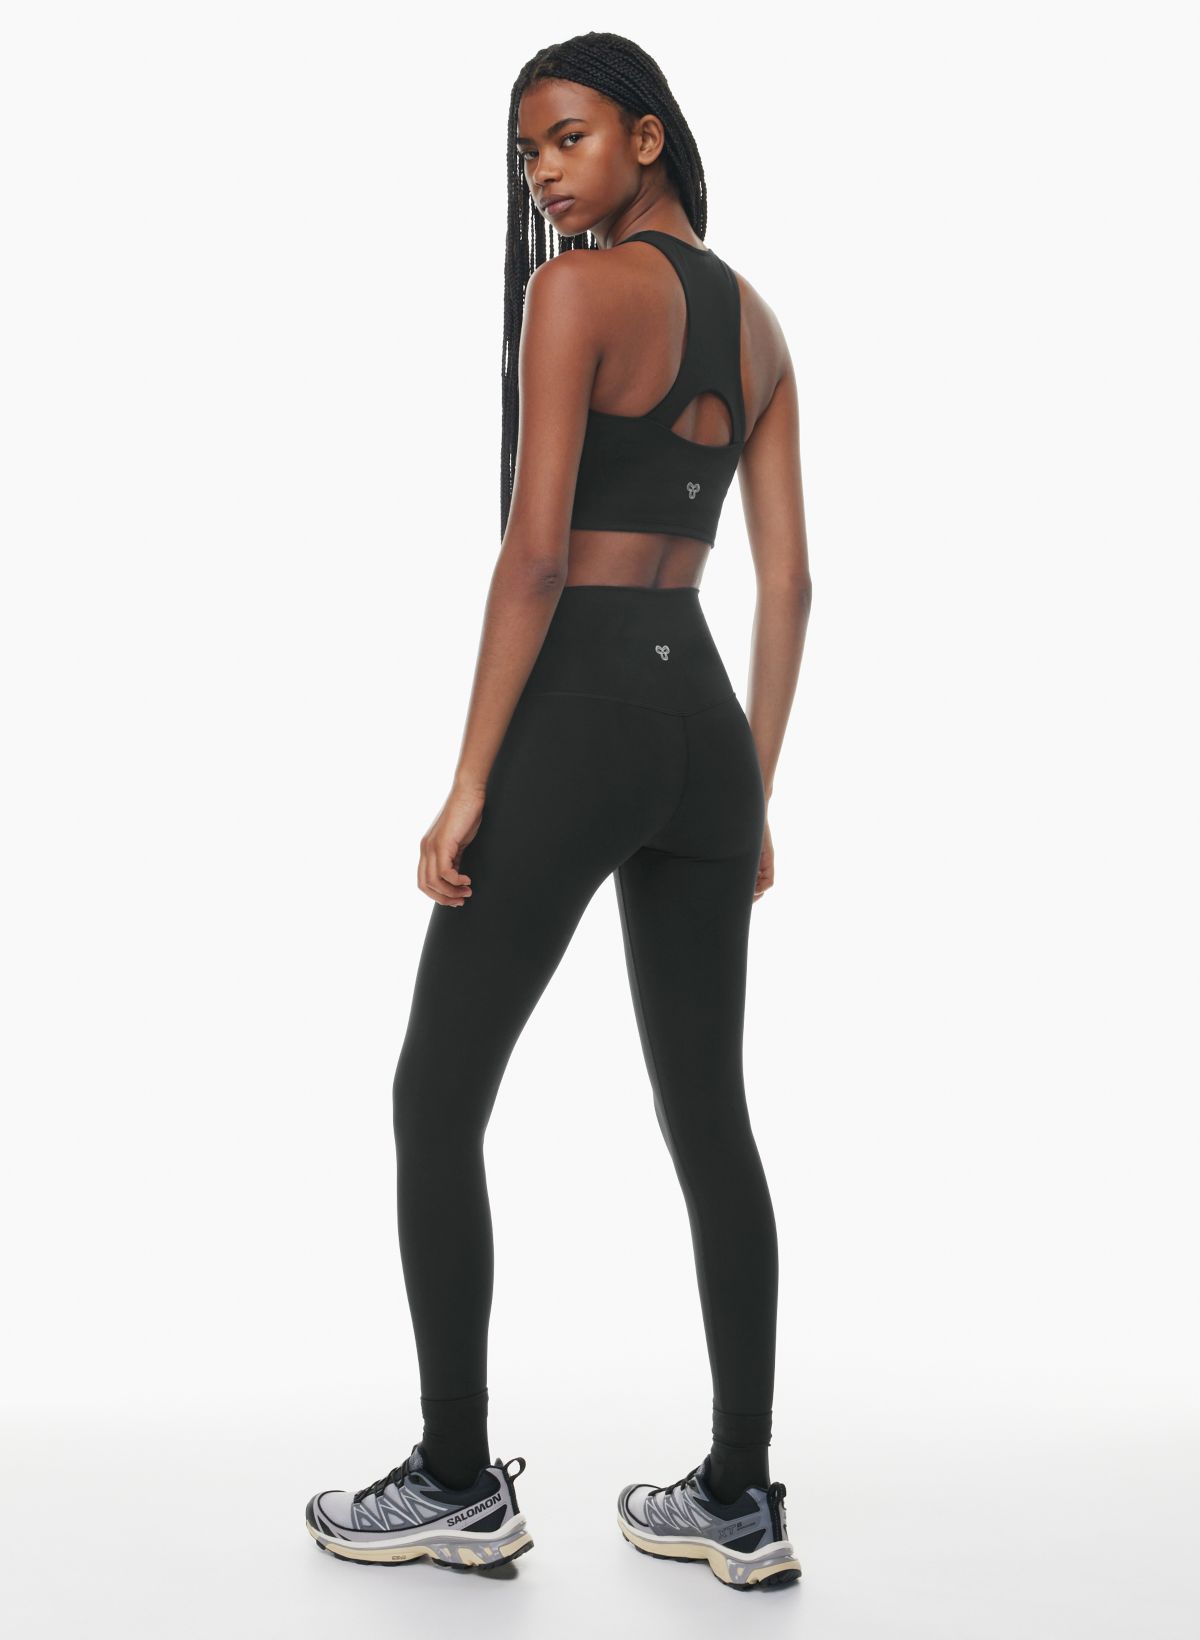 Maroon Athletic / Swim Skirt with built in leggings.